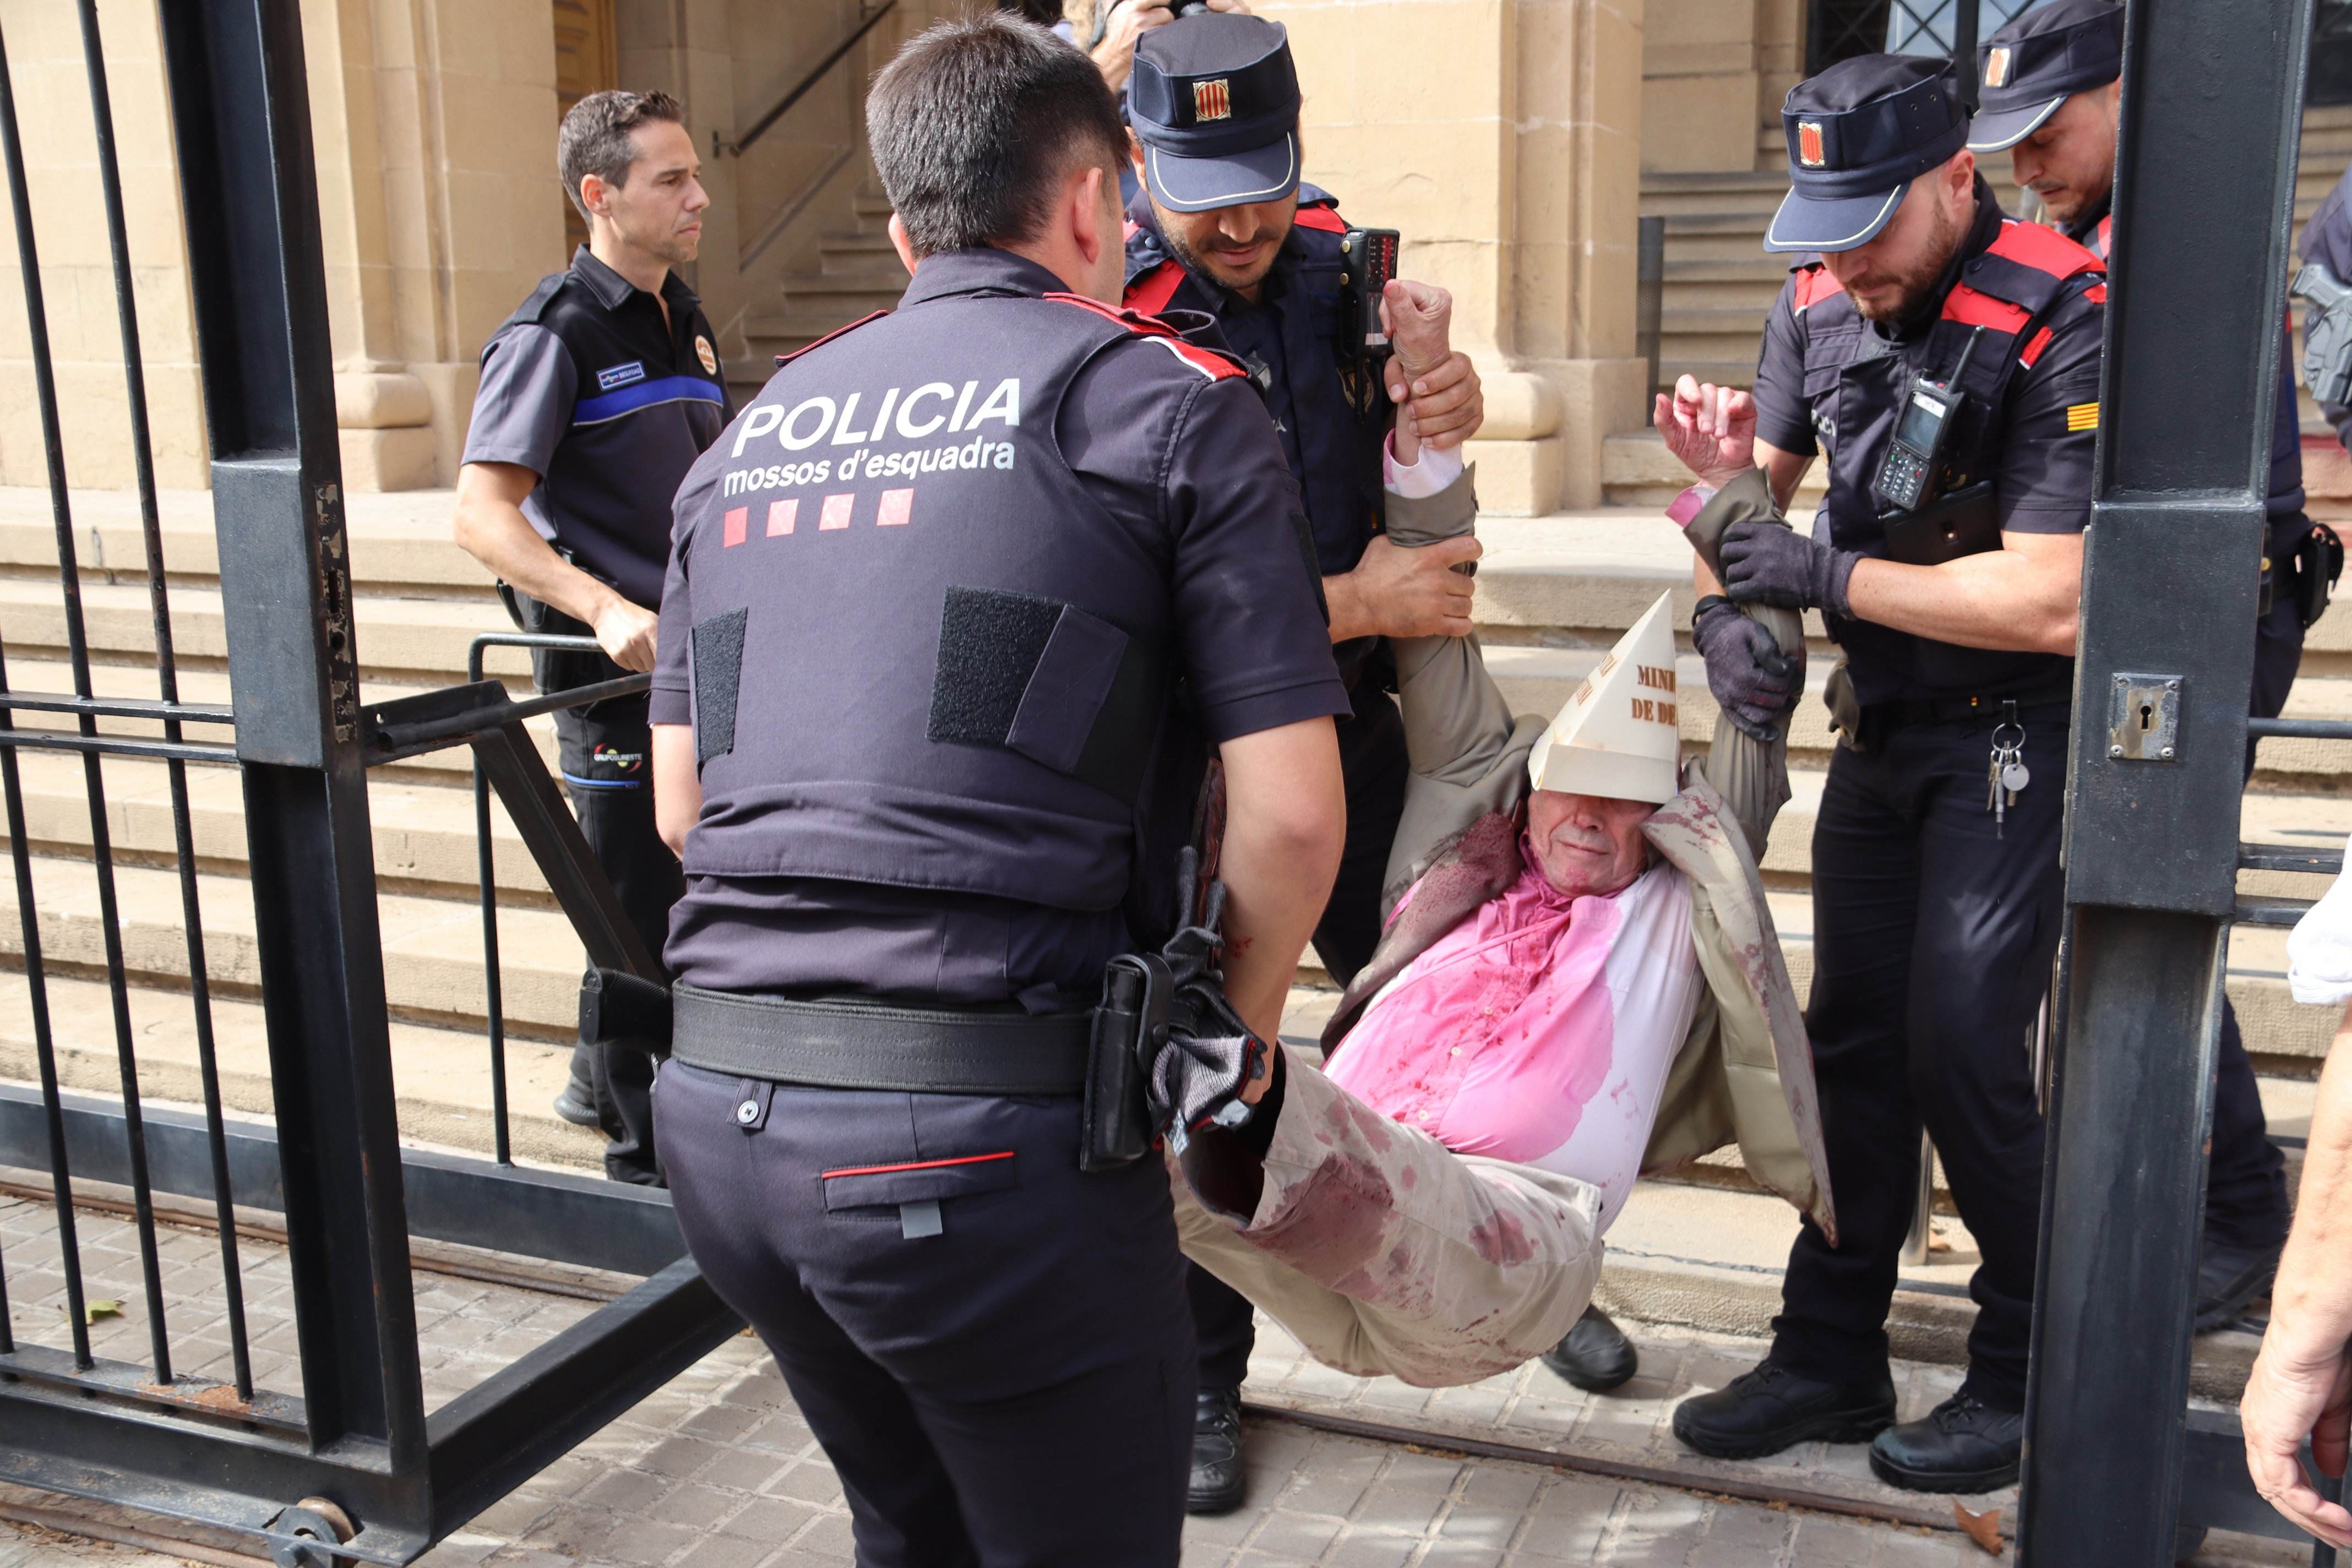 Pacifistas protestan contra Pedro Sánchez con sangre falsa en Barcelona y los Mossos los desalojan